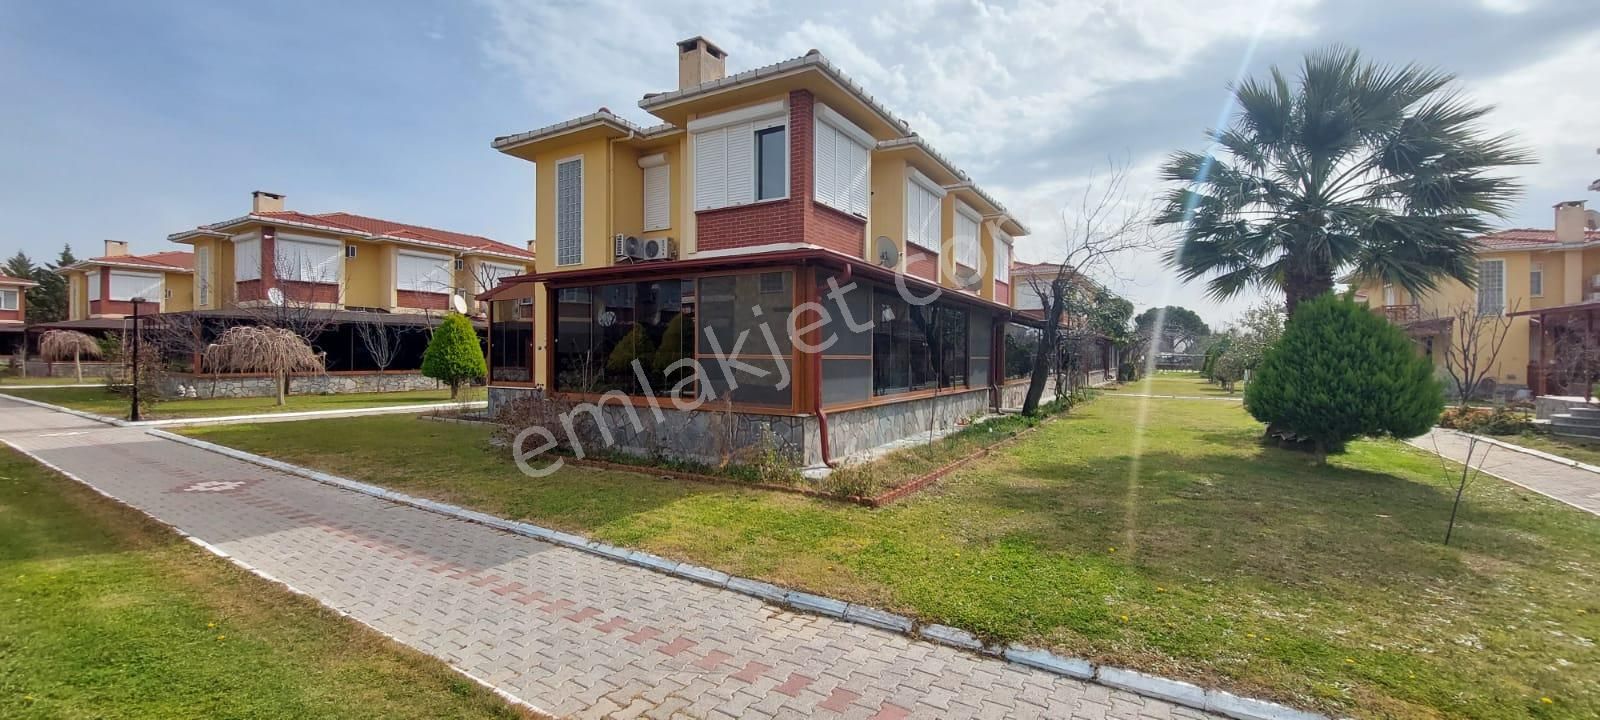 Dikili Salihler Satılık Villa  İzmir Dikili Salihleraltı Denize Sıfır Sitede Satılık Yazlık